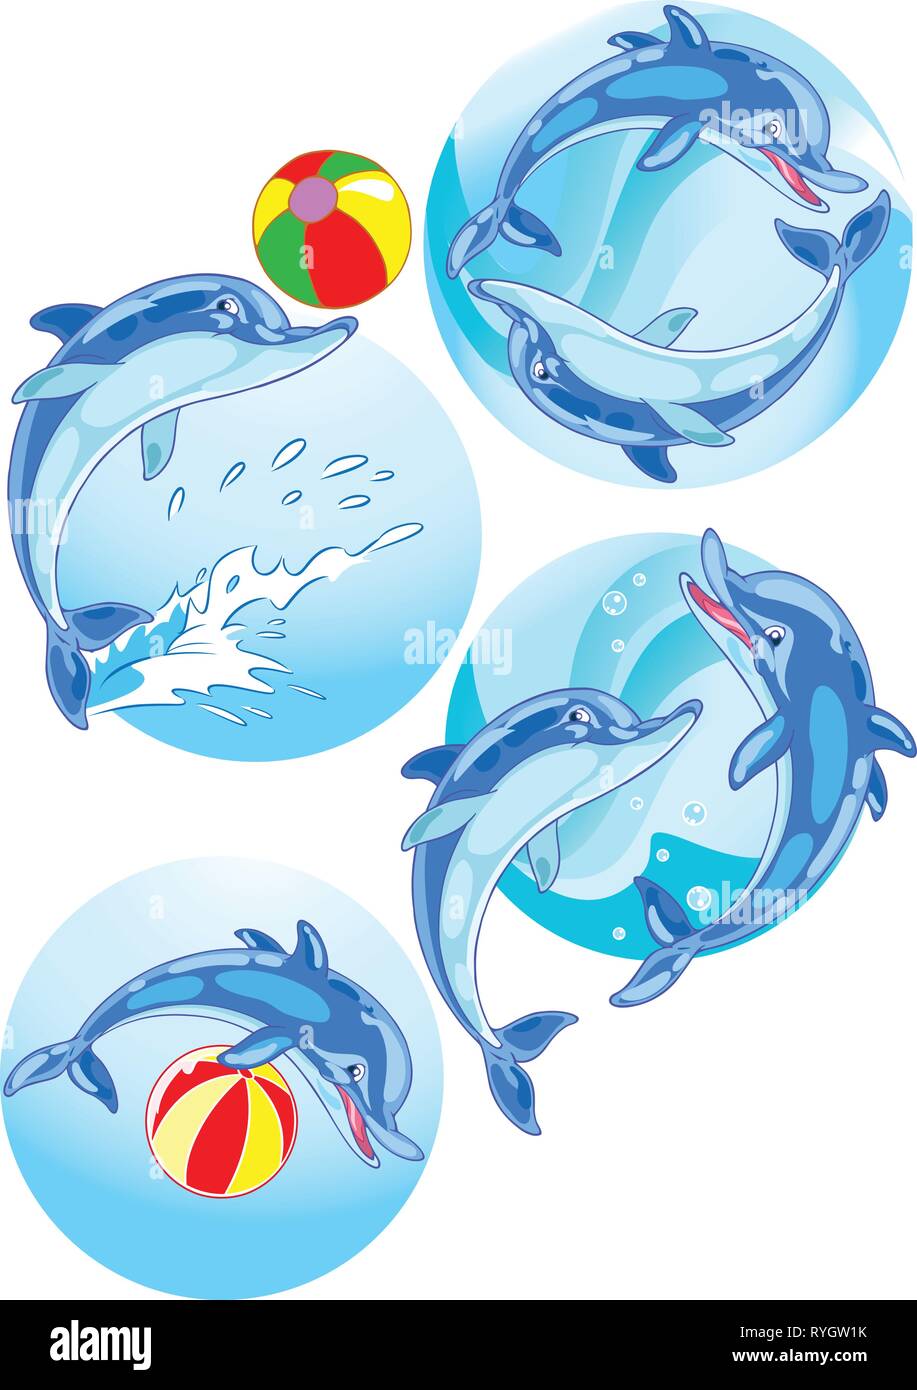 Die Abbildung zeigt ein paar Delfine spielen in der Kugel. Abbildung im Cartoon Stil gemacht, und auf separaten Layern. Stock Vektor